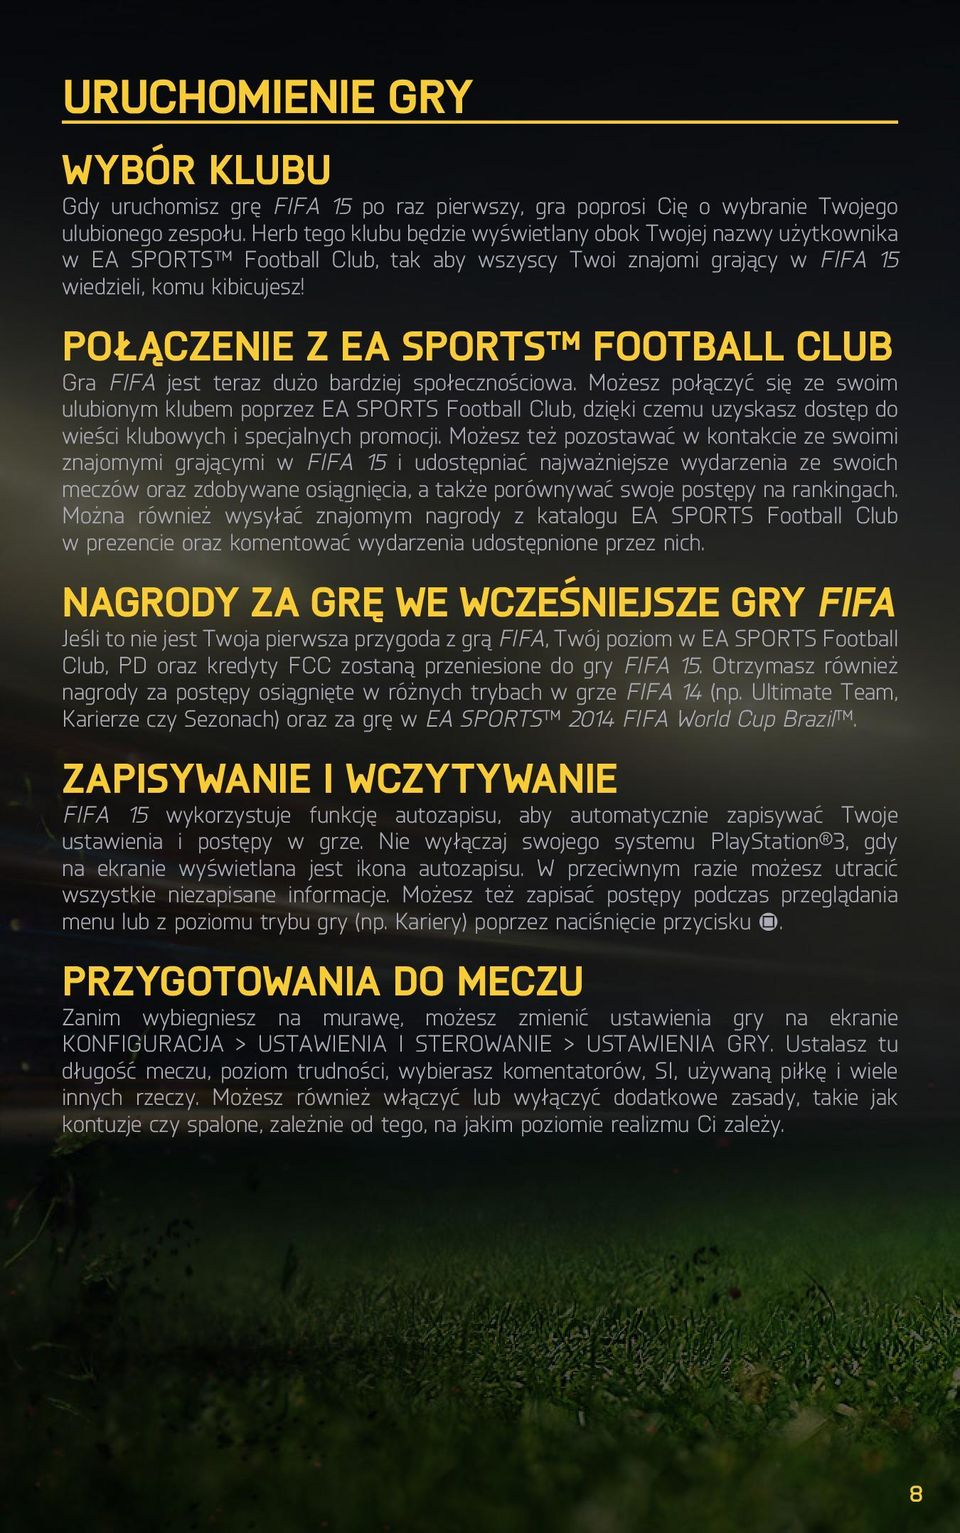 POŁĄCZENIE Z EA SPORTS FOOTBALL CLUB Gra FIFA jest teraz dużo bardziej społecznościowa.